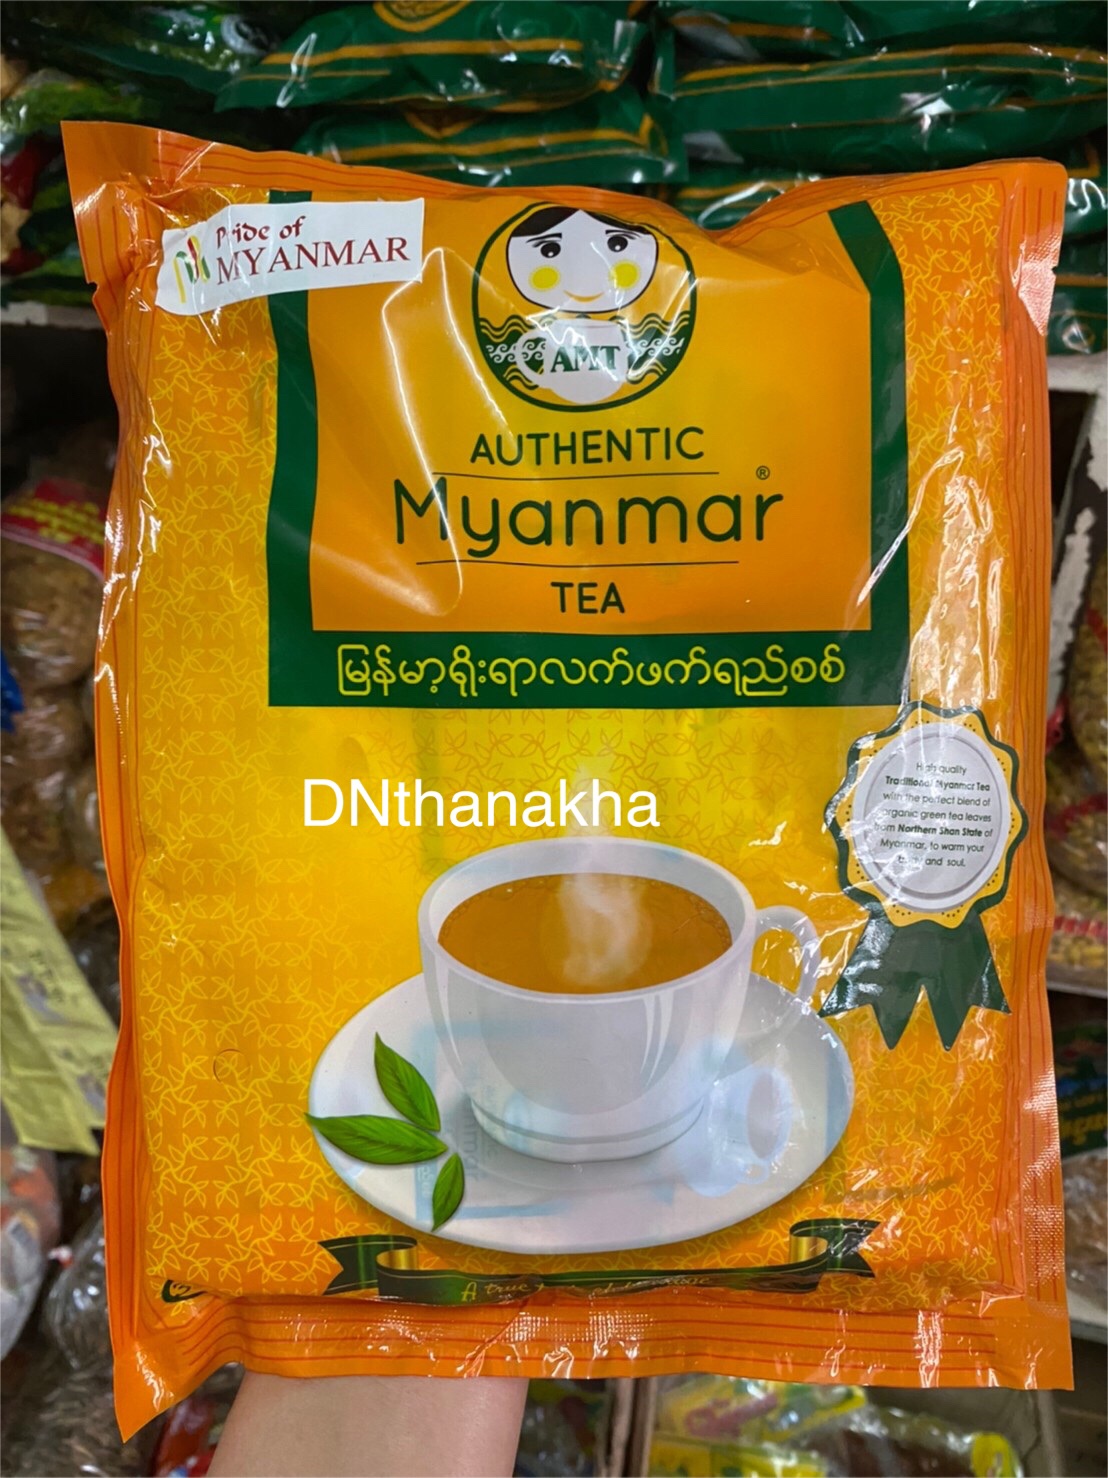 ชานมพม่า ชานม รสชาติอร่อย ยี่ห้อ Authentic Myanmar Tea